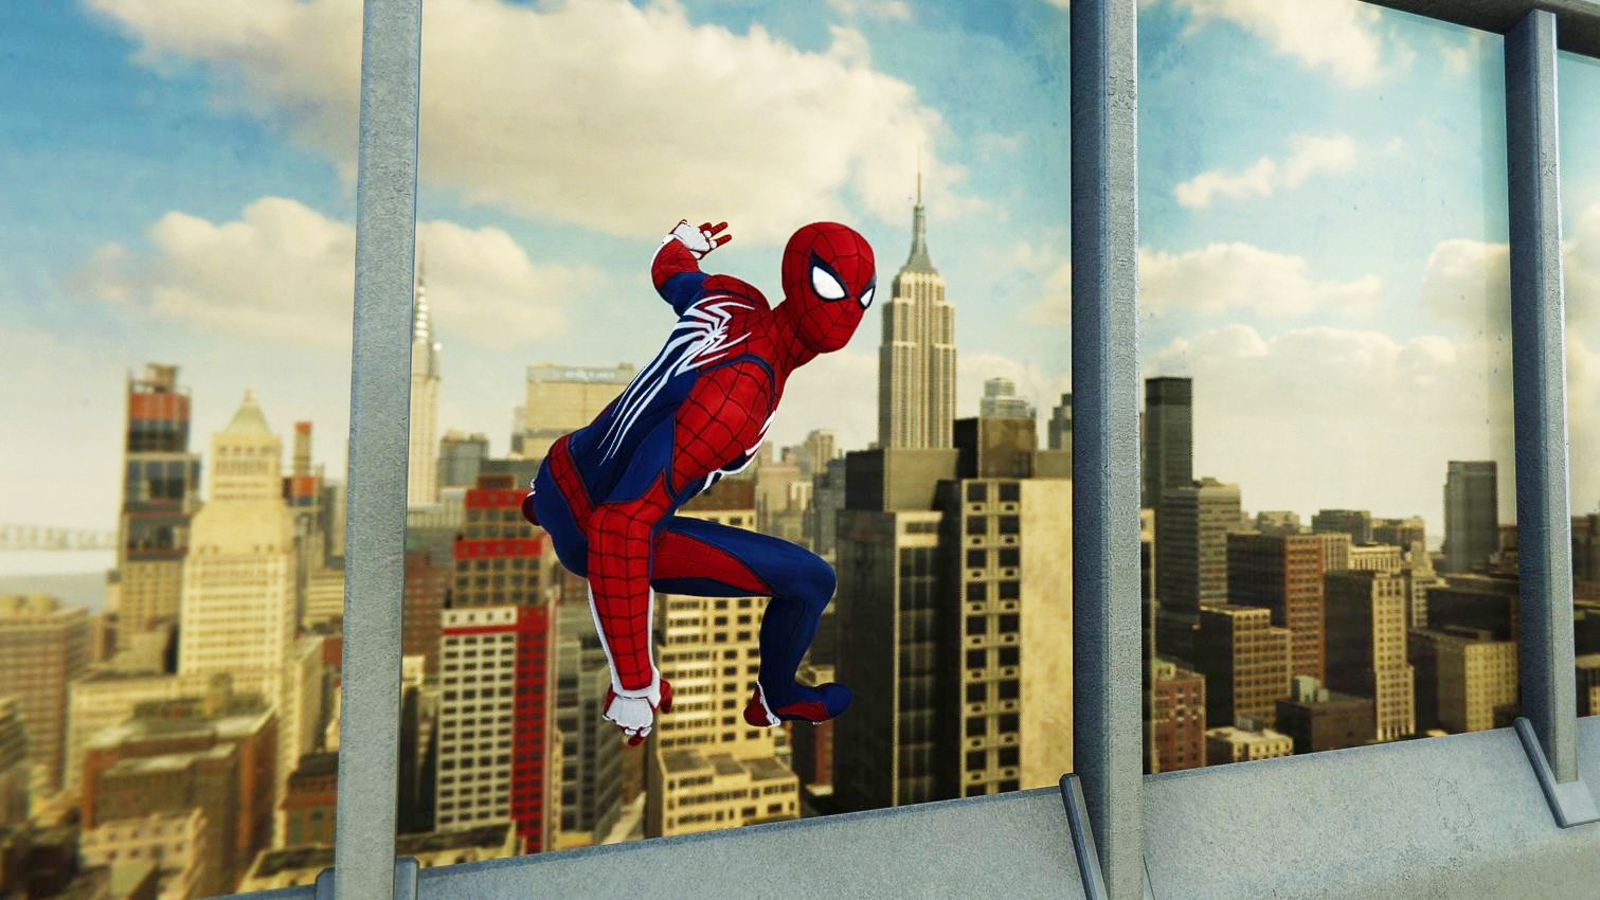 Marvel's Spider-Man Remastered Upgrade Por 50 Reais Do Ps5 Vale A Pena? 